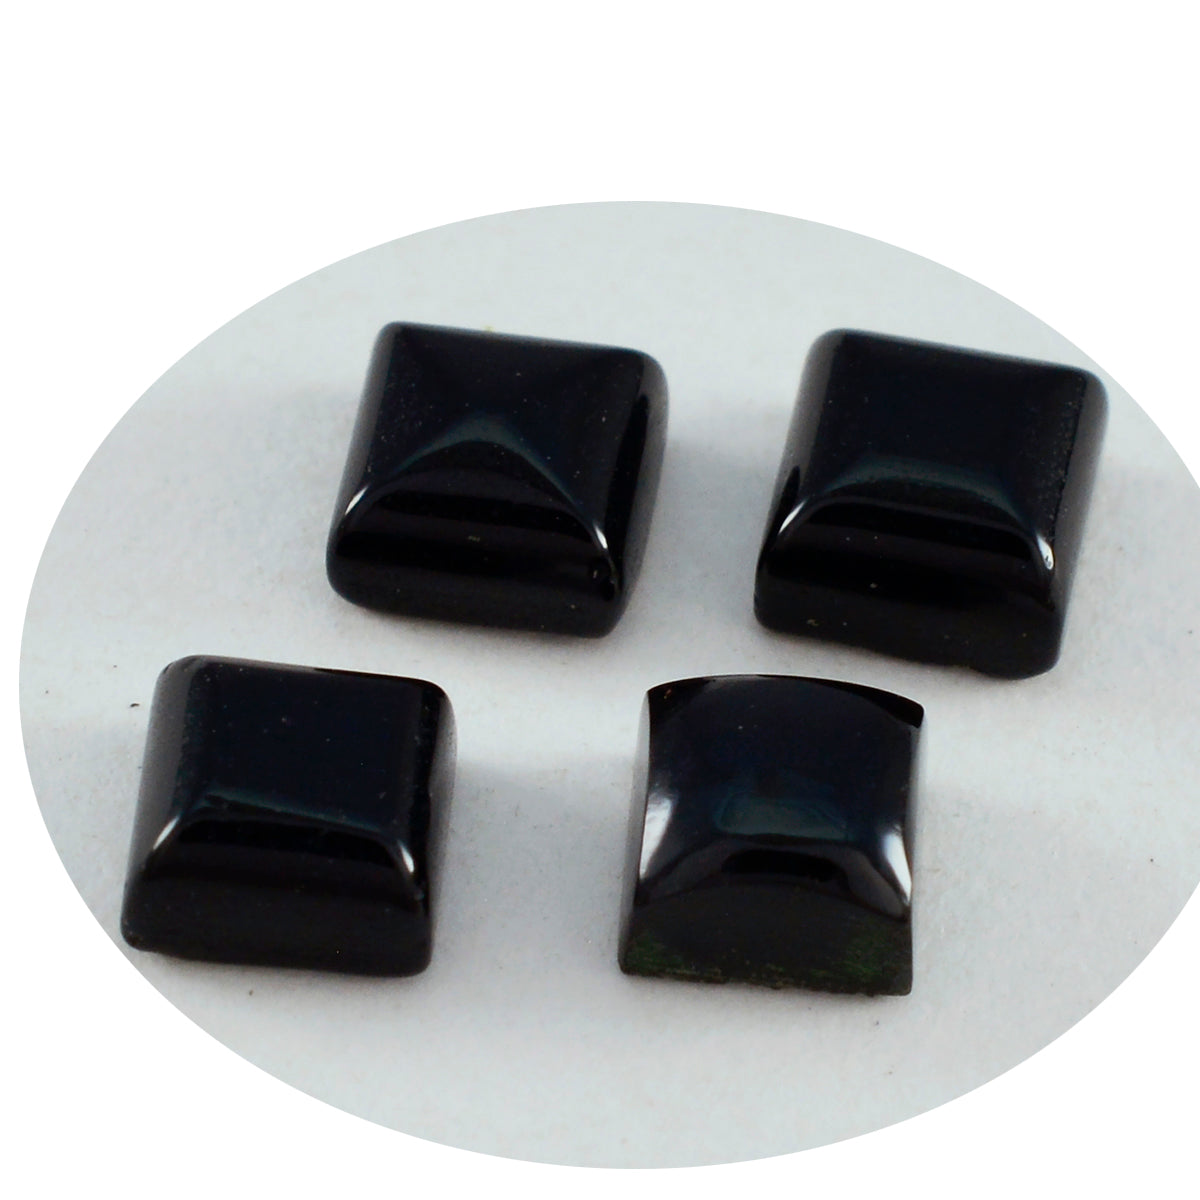 Riyogems 1 Stück schwarzer Onyx-Cabochon, 9 x 9 mm, quadratische Form, fantastischer hochwertiger loser Stein